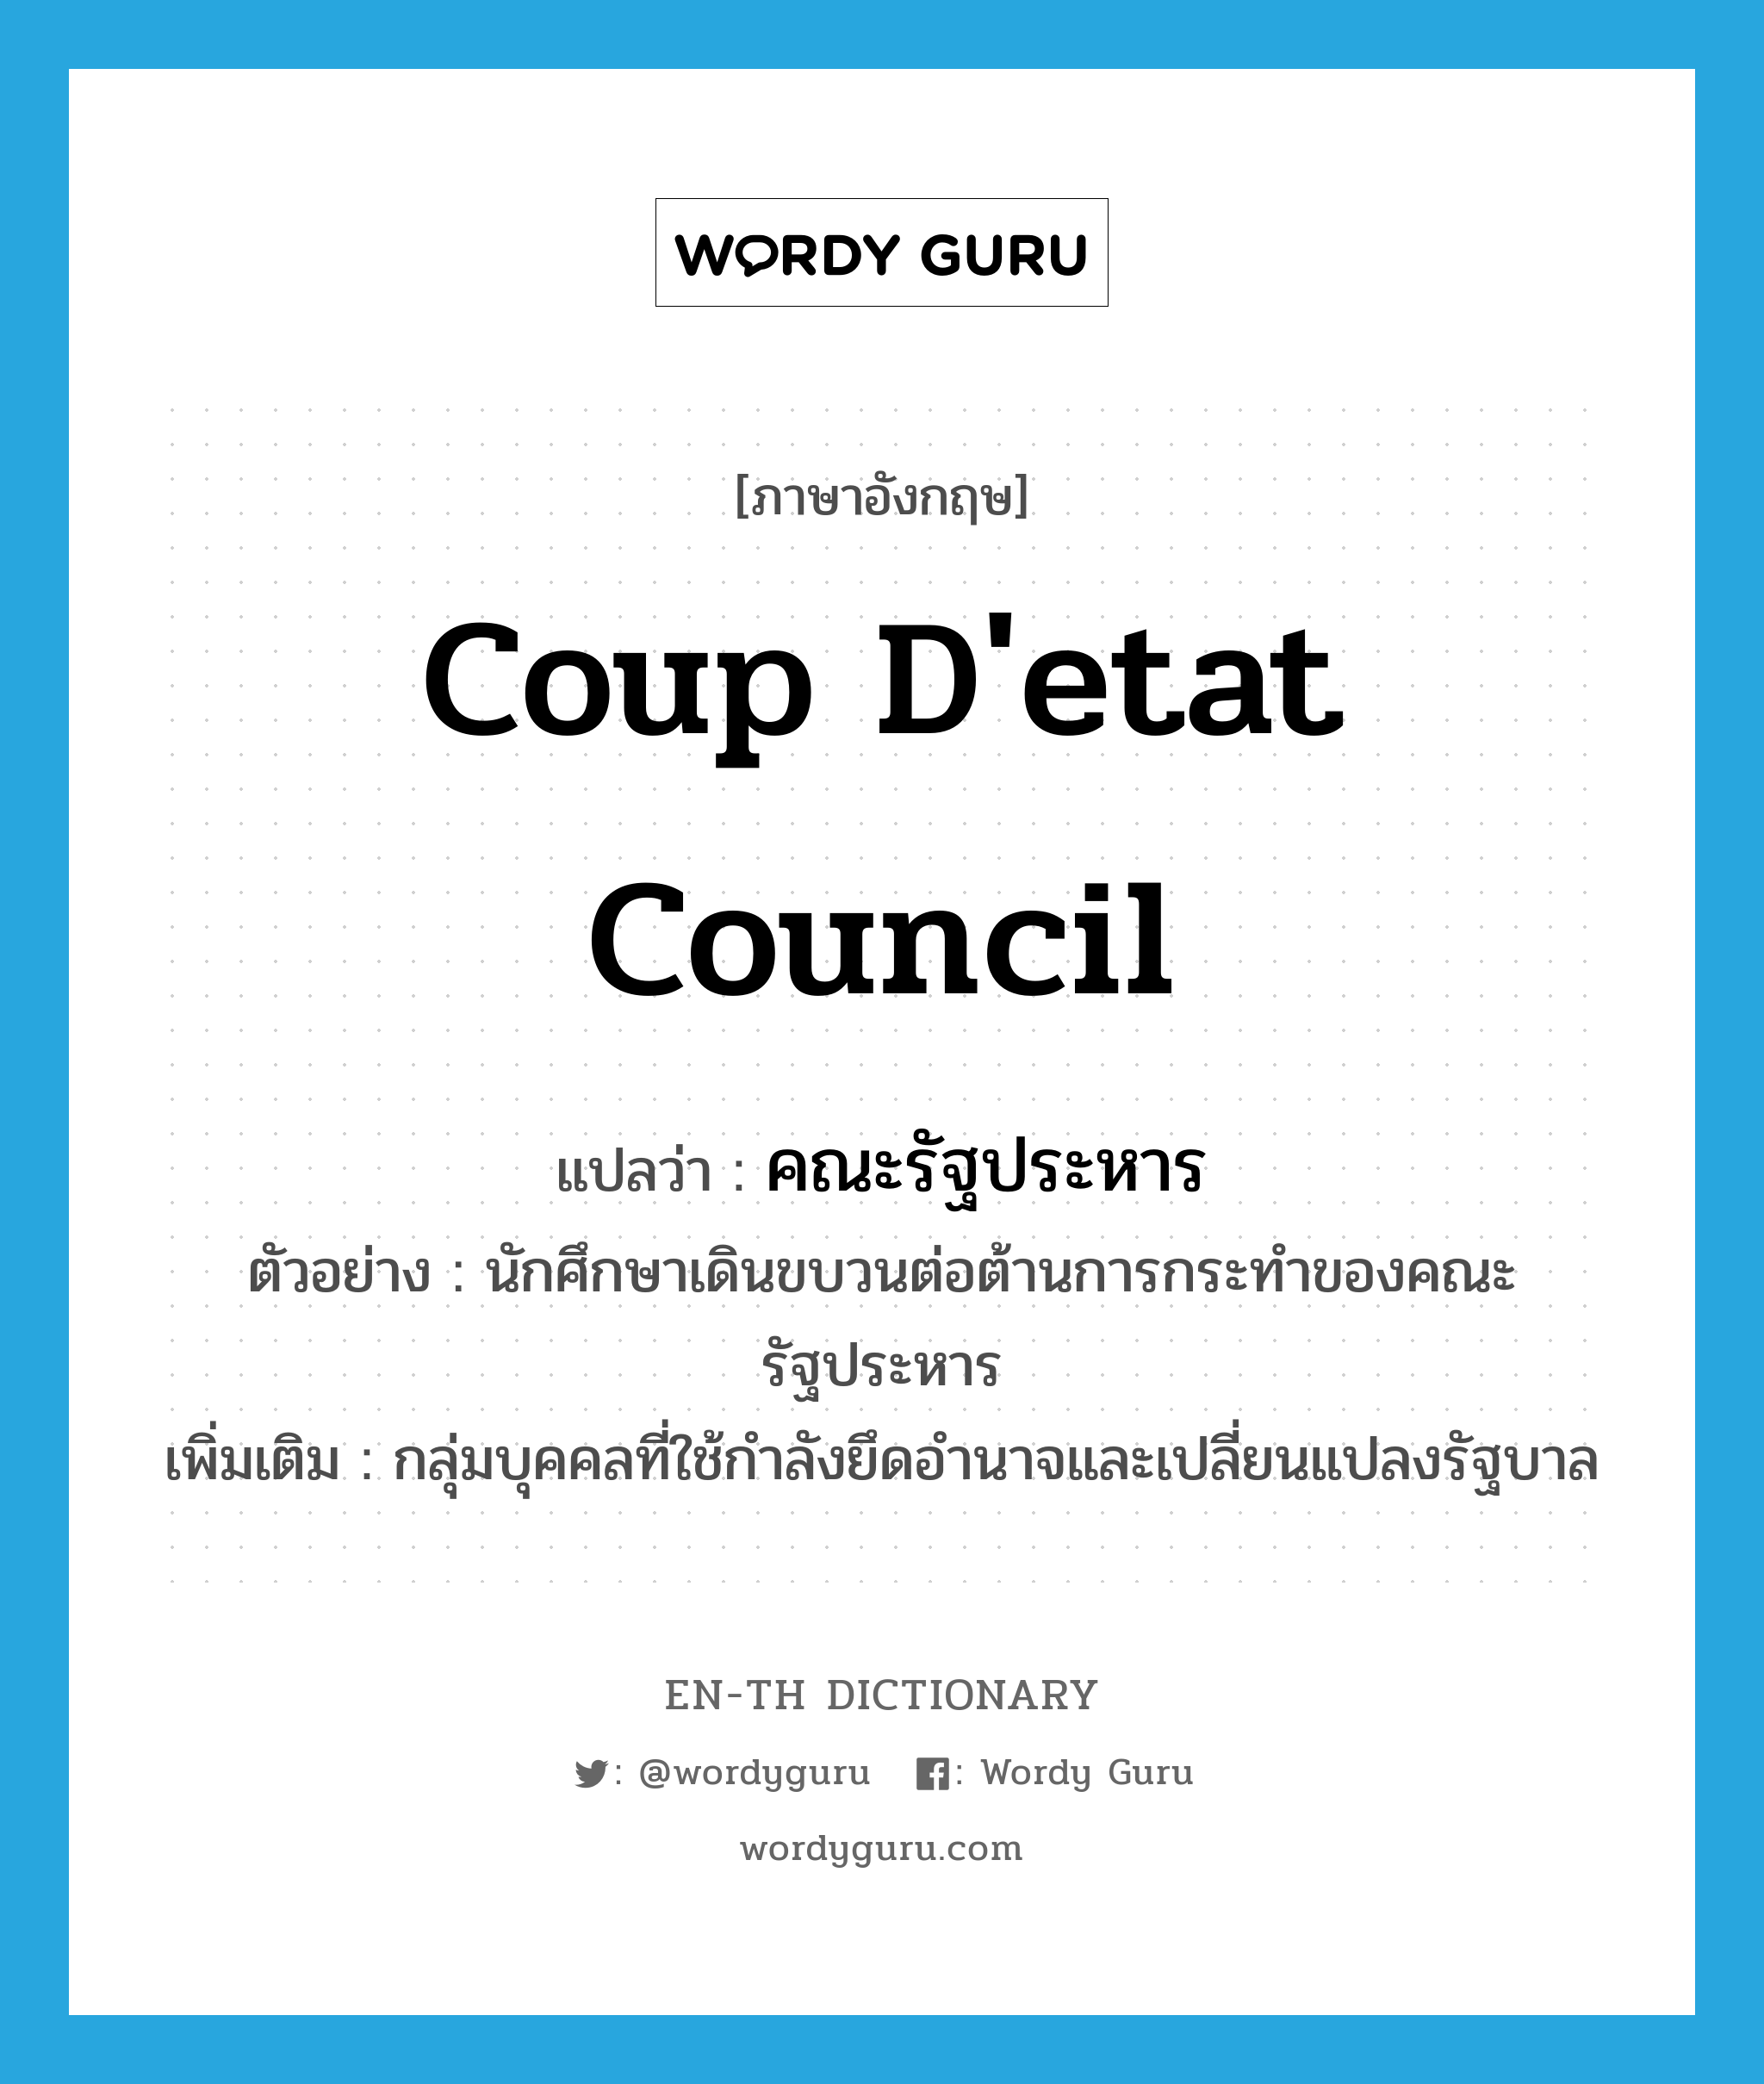 coup d'etat council แปลว่า?, คำศัพท์ภาษาอังกฤษ coup d'etat council แปลว่า คณะรัฐประหาร ประเภท N ตัวอย่าง นักศึกษาเดินขบวนต่อต้านการกระทำของคณะรัฐประหาร เพิ่มเติม กลุ่มบุคคลที่ใช้กำลังยึดอำนาจและเปลี่ยนแปลงรัฐบาล หมวด N